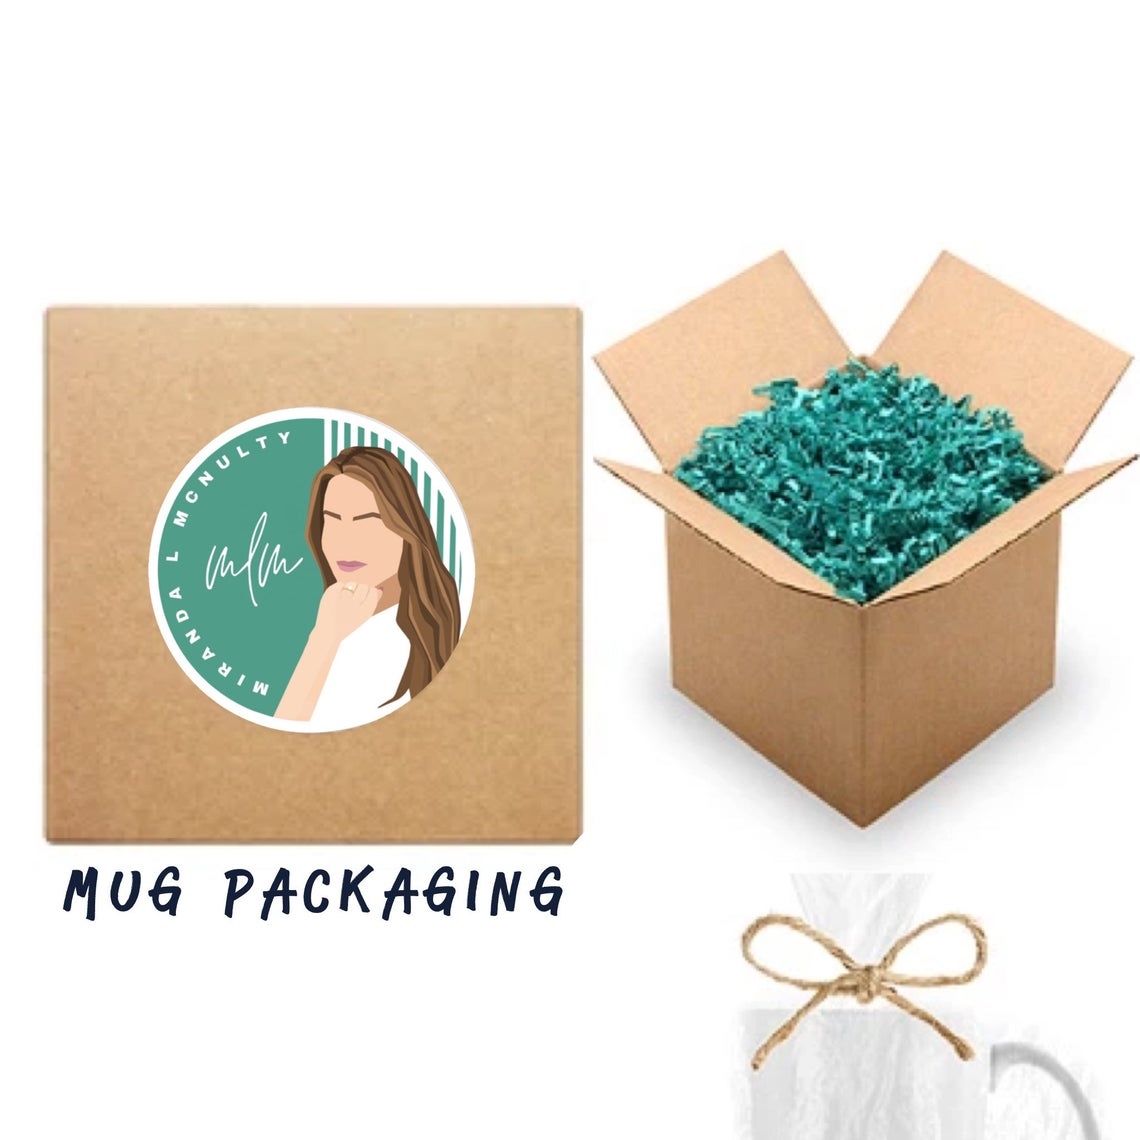 Packaging of mugs by MirandaLMcNulty